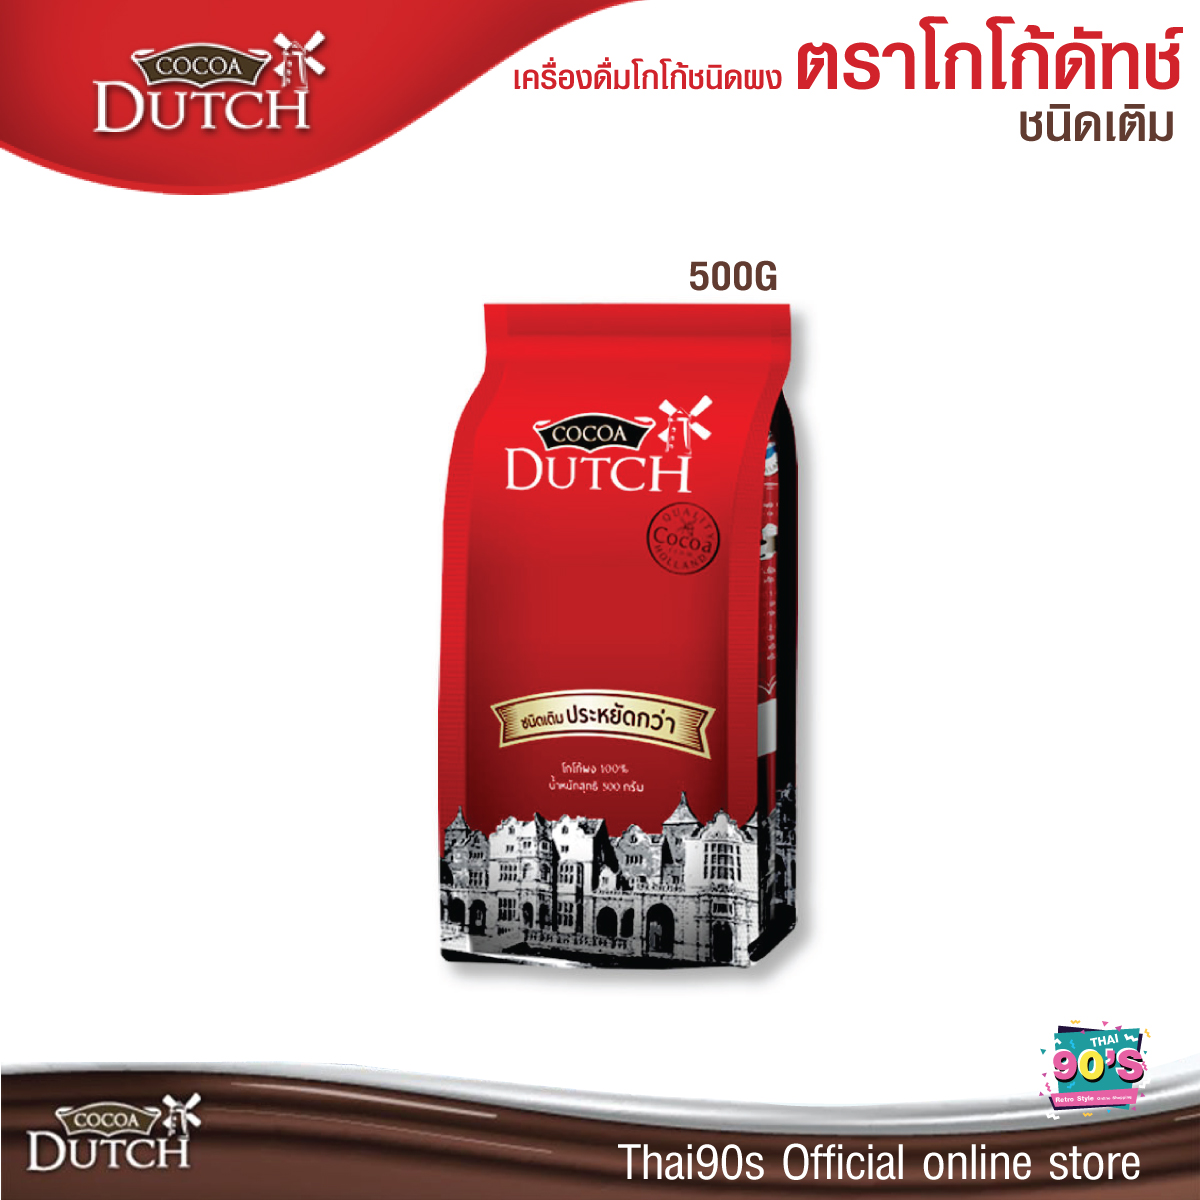 100% Cocoa Powder, Cocoa Dutch Brand Cocoa drink powder, refill bag 350 and 500 g. ขนาดบรรจุ 500G